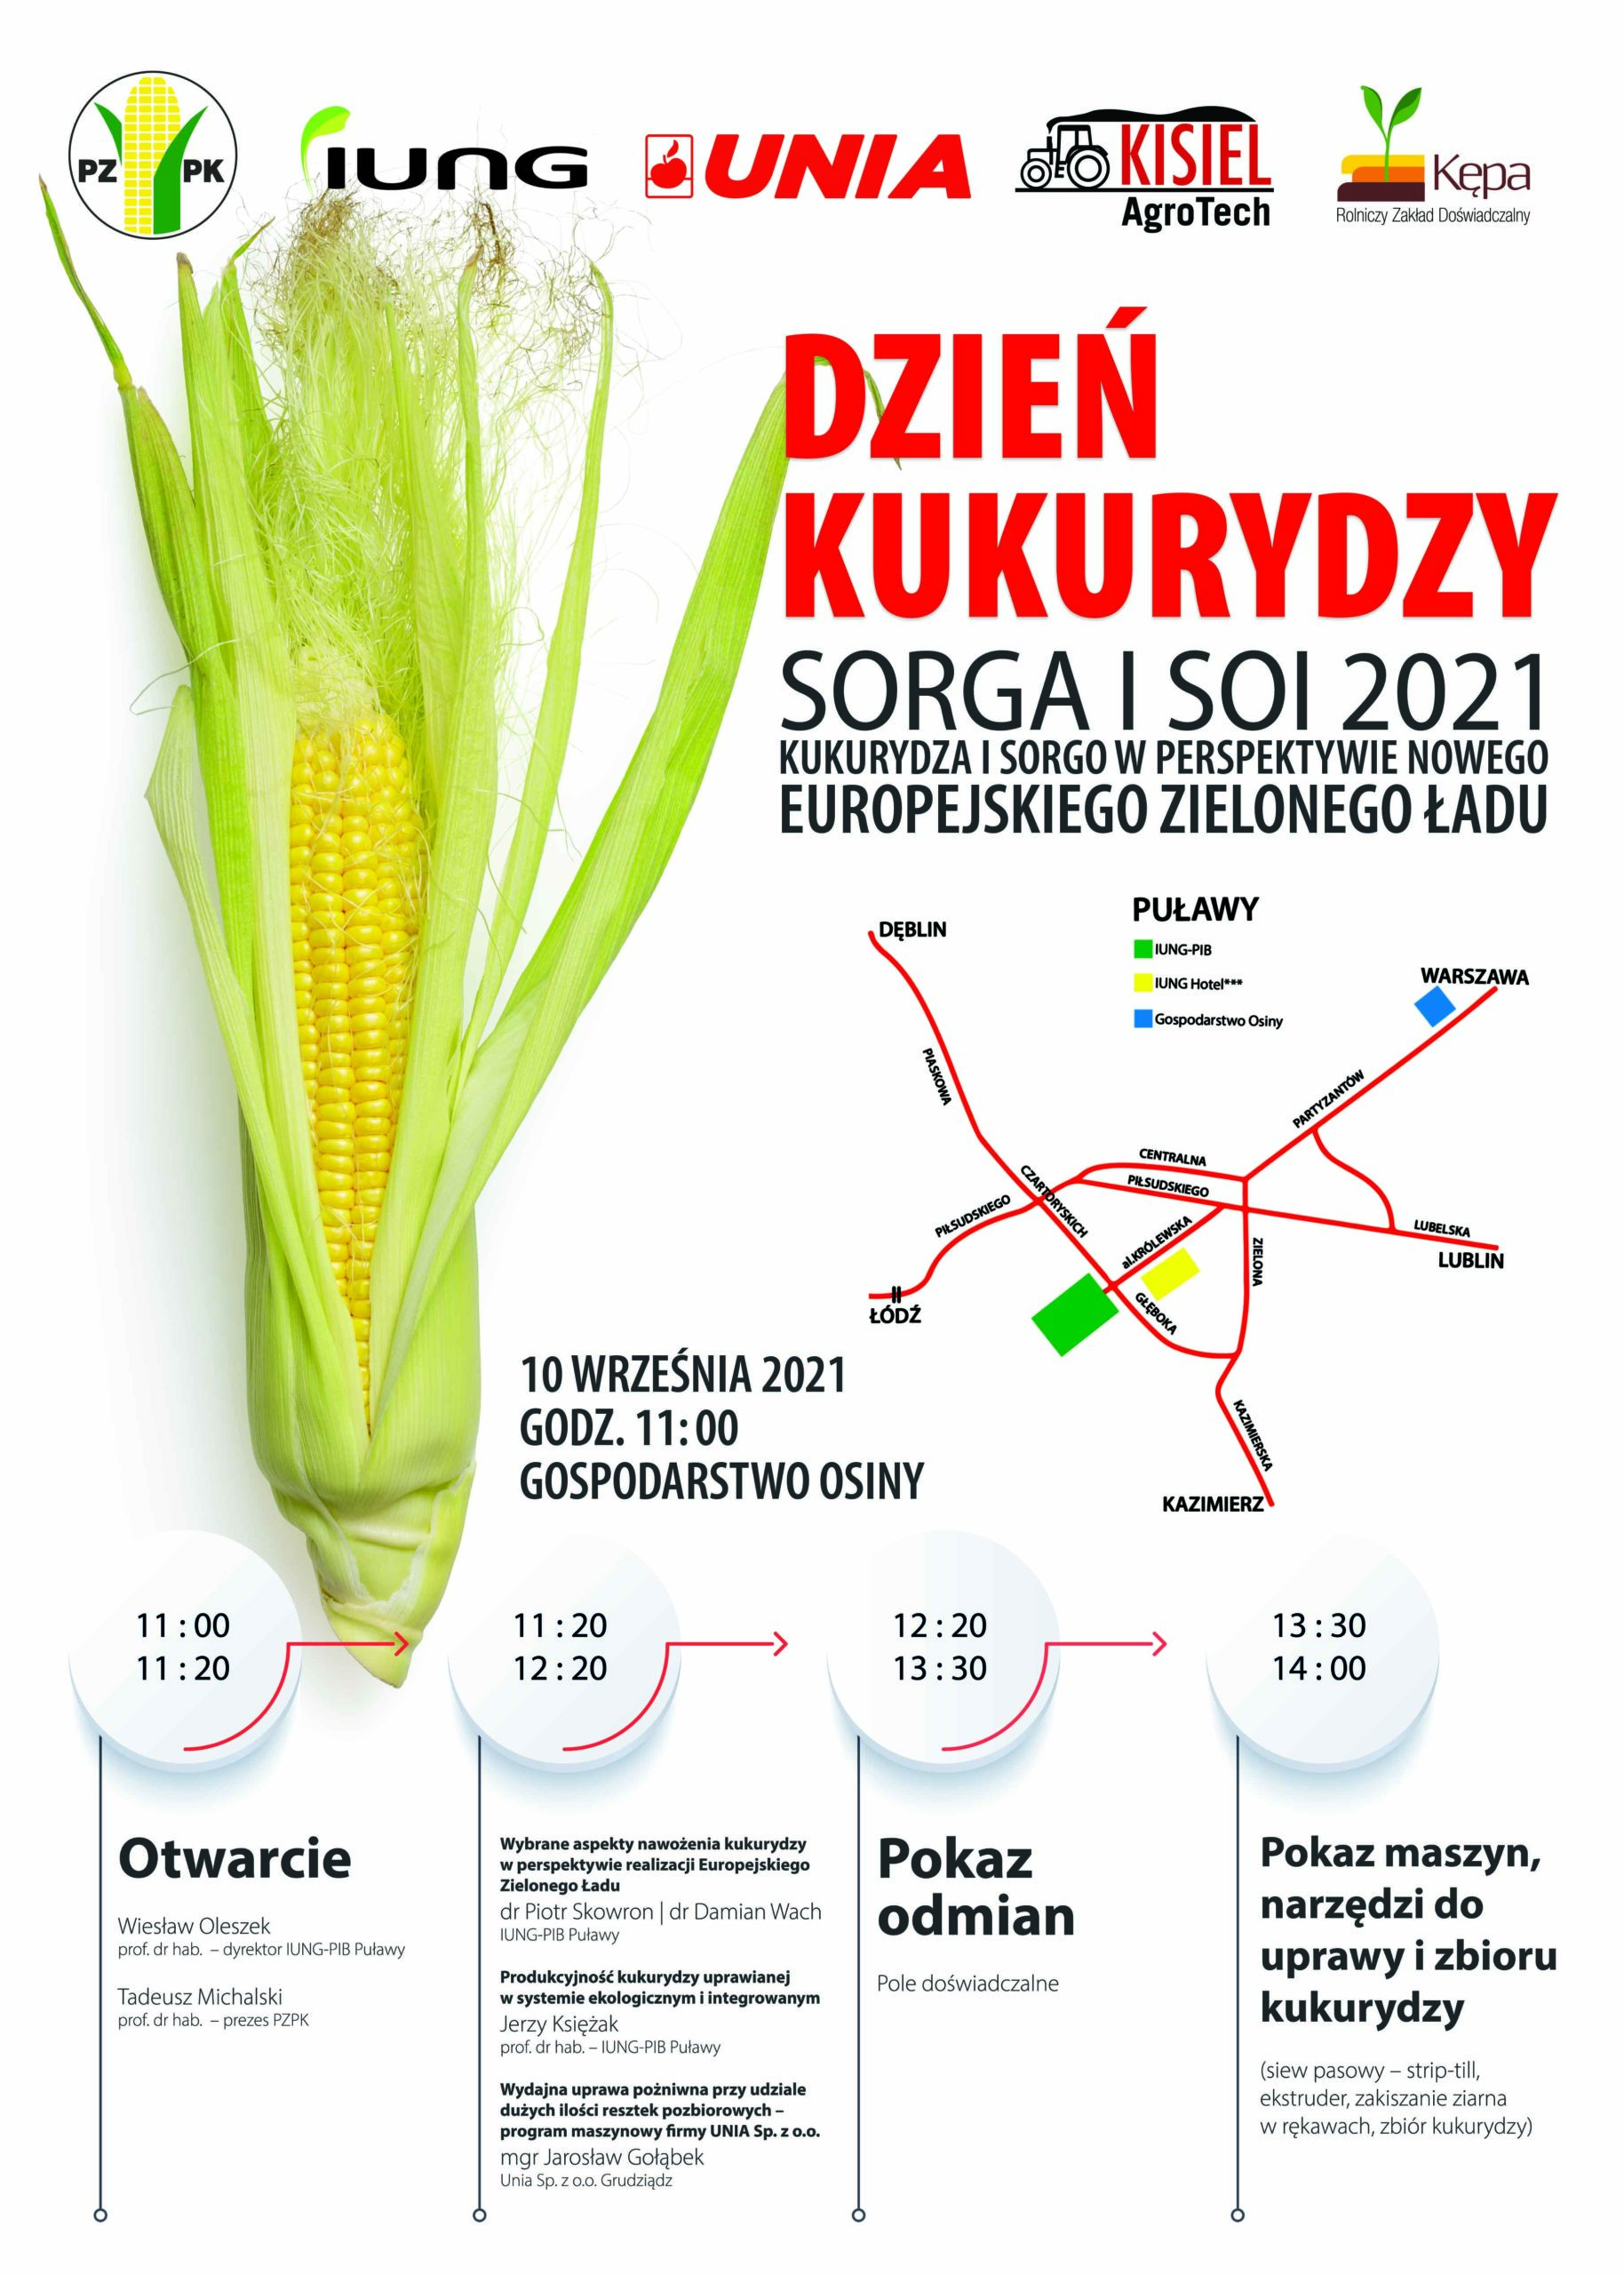 Dzień kukurydzy, sorga i soi 2021